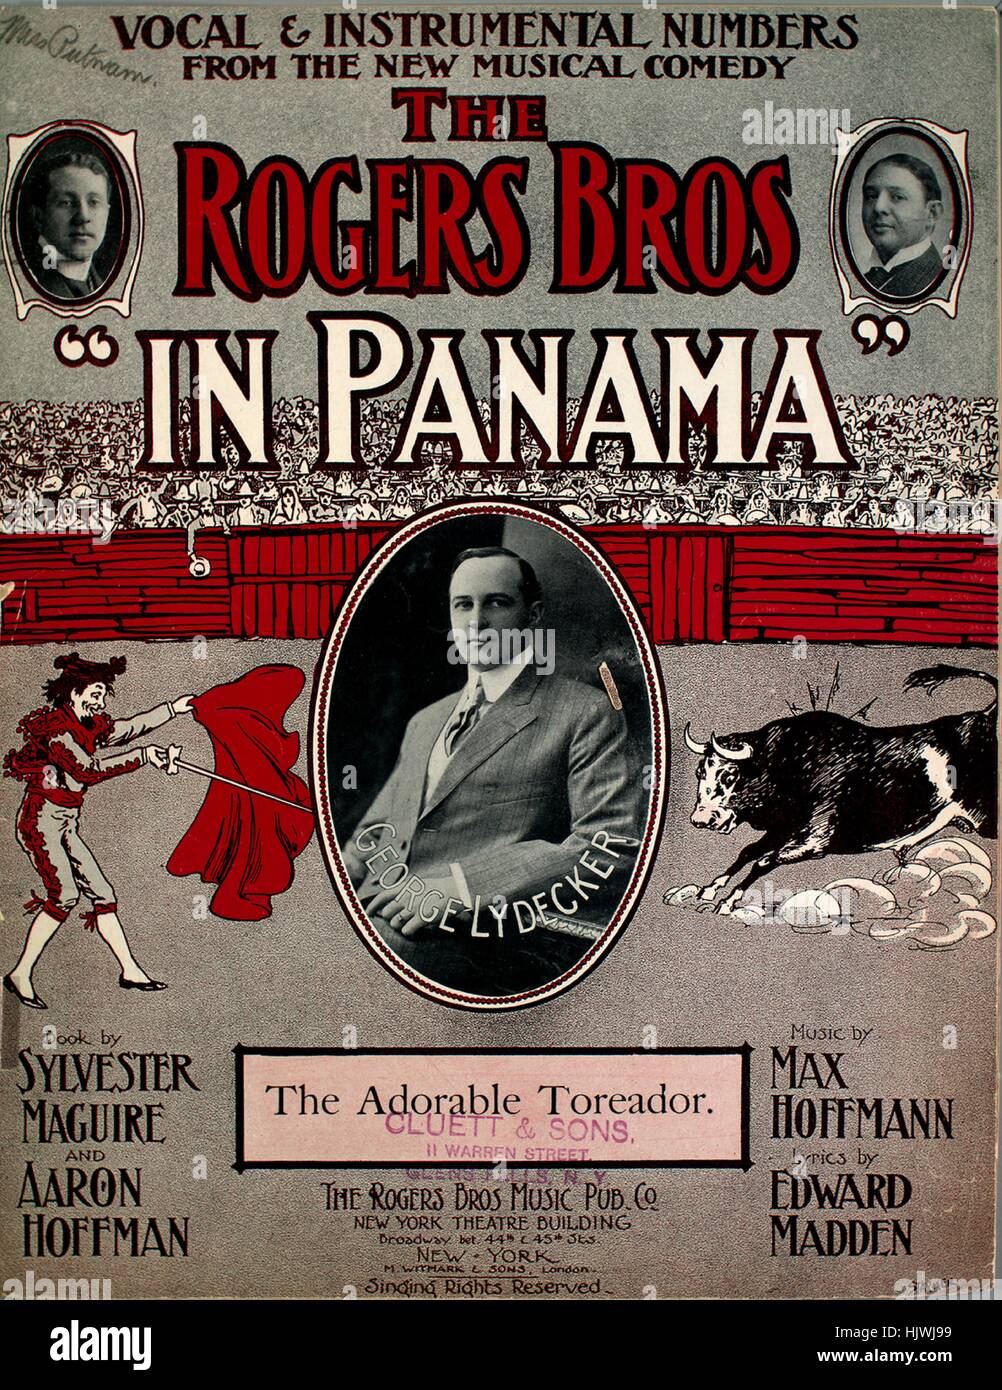 Imagen de cubierta de partituras de la canción 'Números vocales e  instrumentales de la nueva comedia musical del Rogers Bros, 'en Panamá' a  los adorables Toreador", con notas de autoría original leyendo '